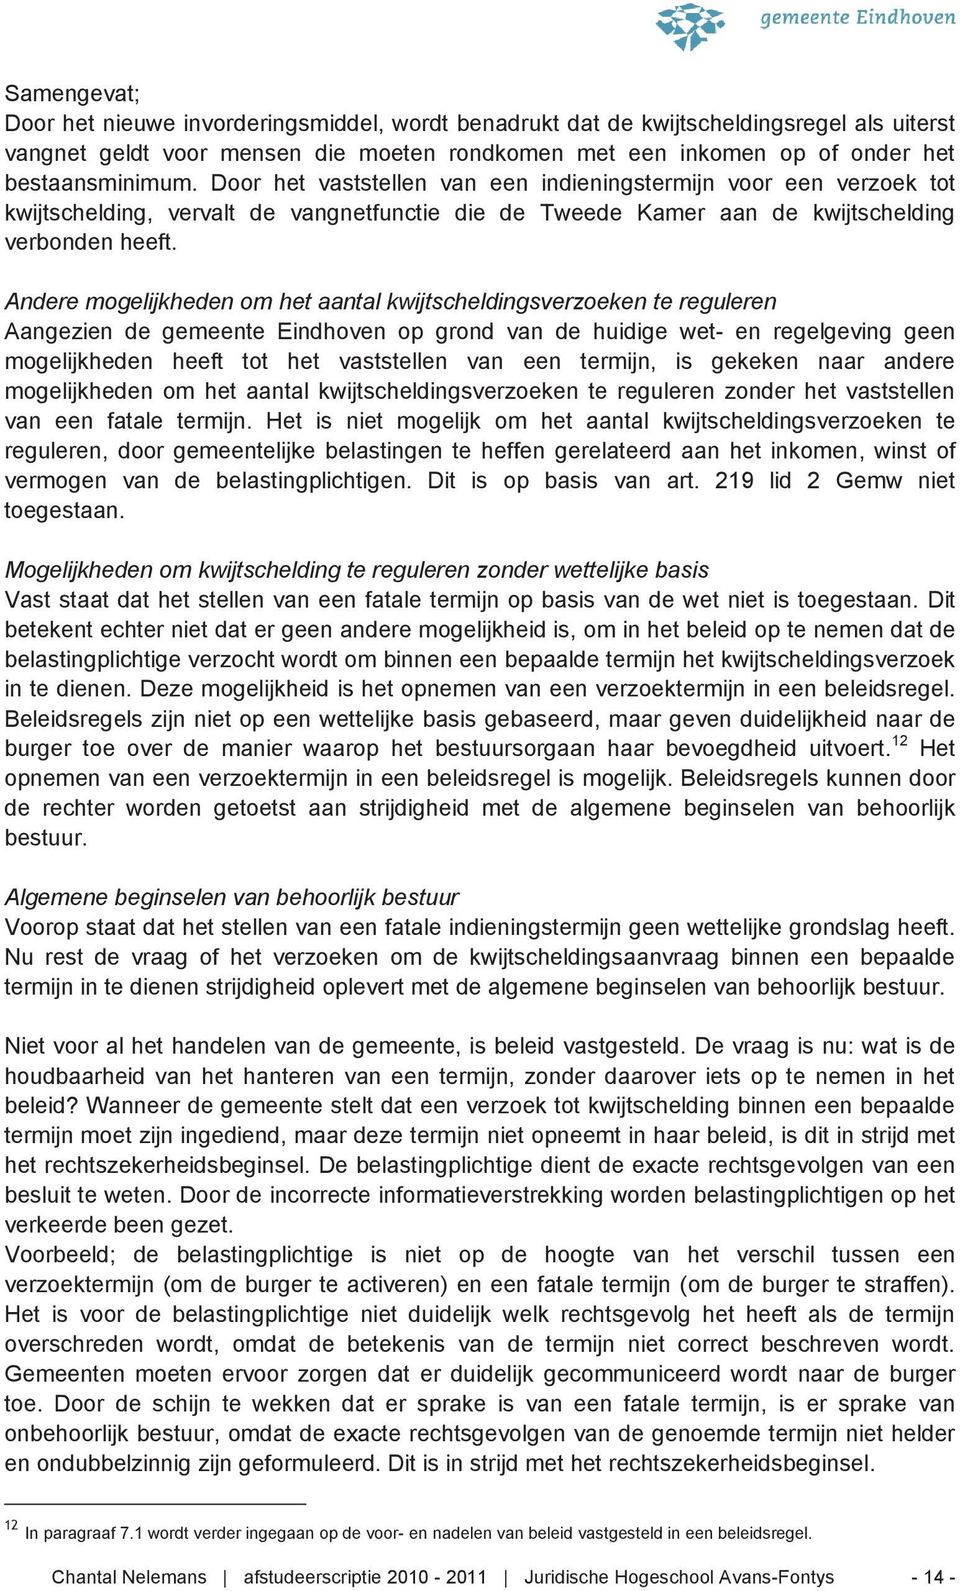 Andere mogelijkheden om het aantal kwijtscheldingsverzoeken te reguleren Aangezien de gemeente Eindhoven op grond van de huidige wet- en regelgeving geen mogelijkheden heeft tot het vaststellen van